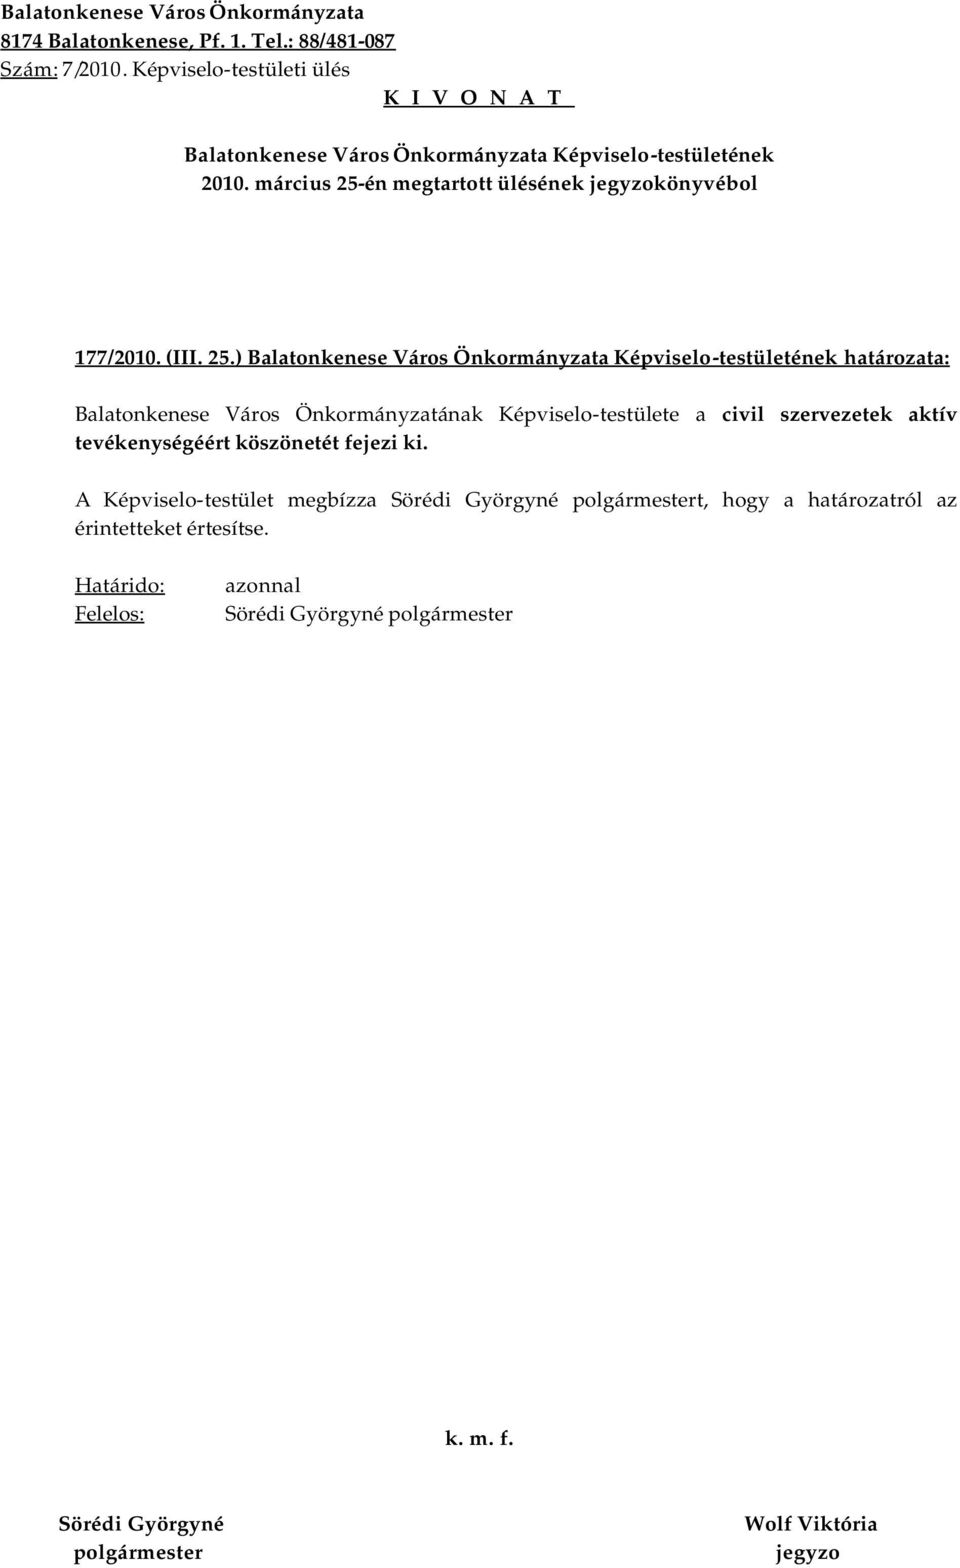 ) határozata: Balatonkenese Város Önkormányzatának Képviselo-testülete a